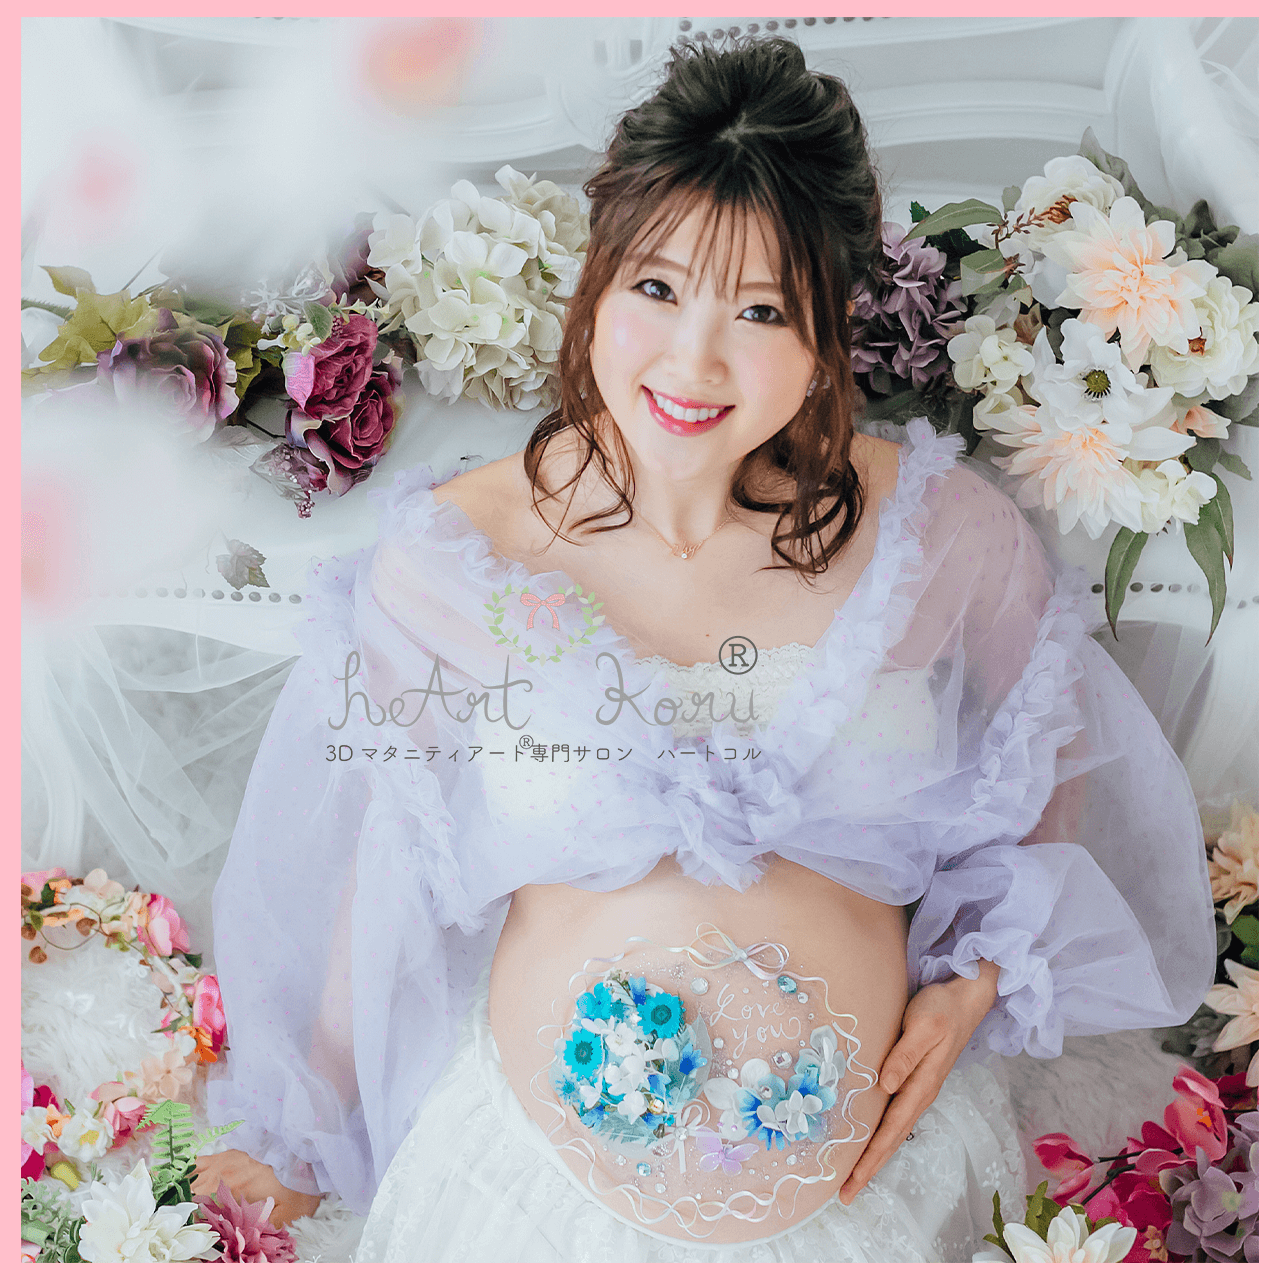 妊婦さんがお花に囲まれて座った撮影です。お腹には瑠璃色の鮮やかな3Dマタニティペイントが施されている。